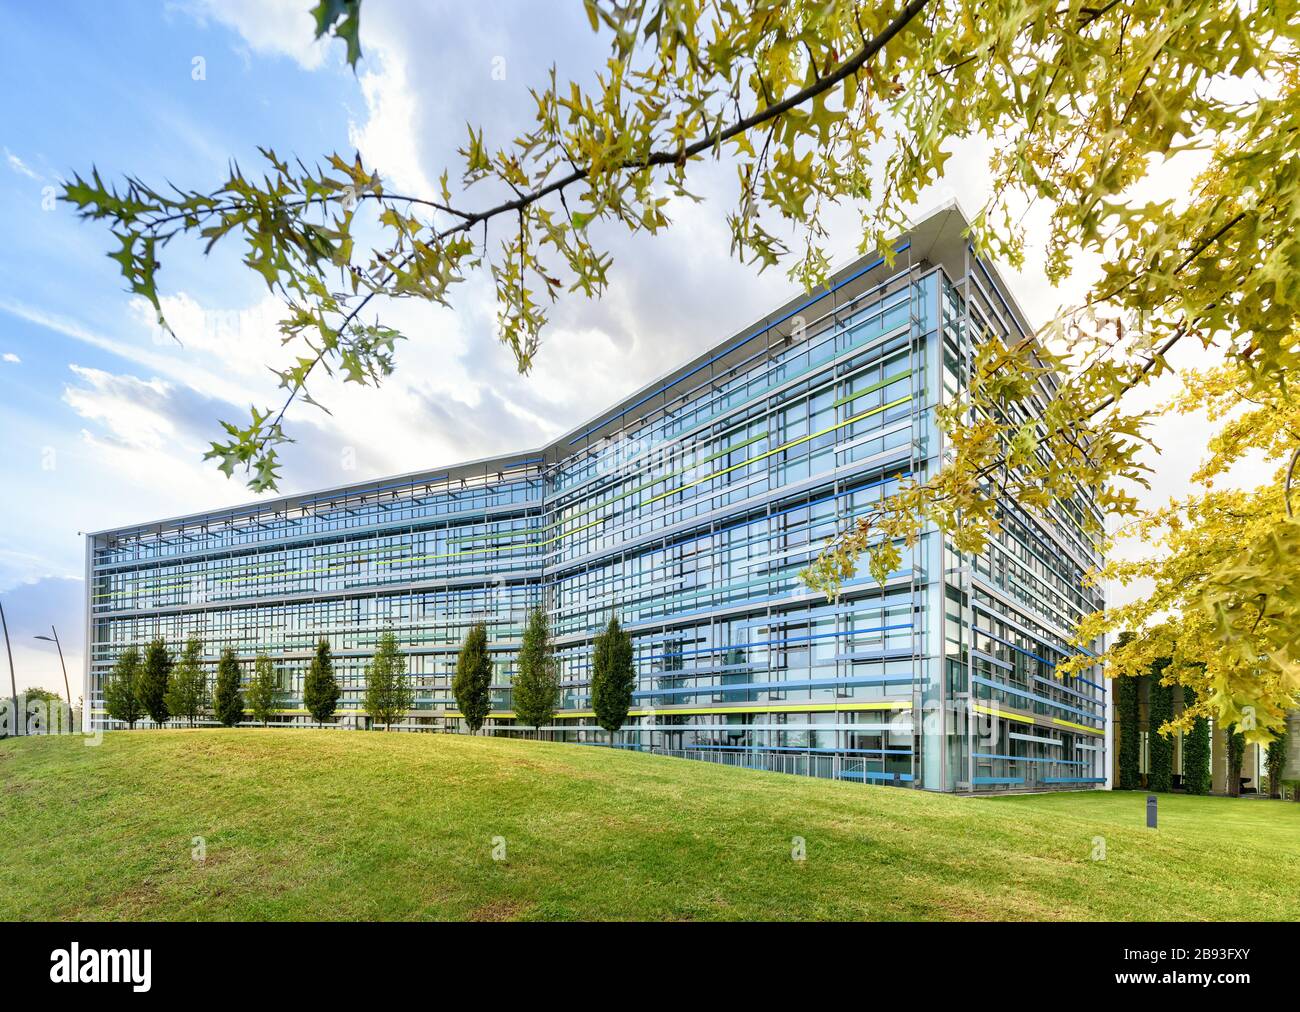 Extérieur d'un immeuble de bureaux moderne à façade de verre angulaire dans un paysage printanier avec pelouses vertes et arbres sous un ciel bleu nuageux Banque D'Images